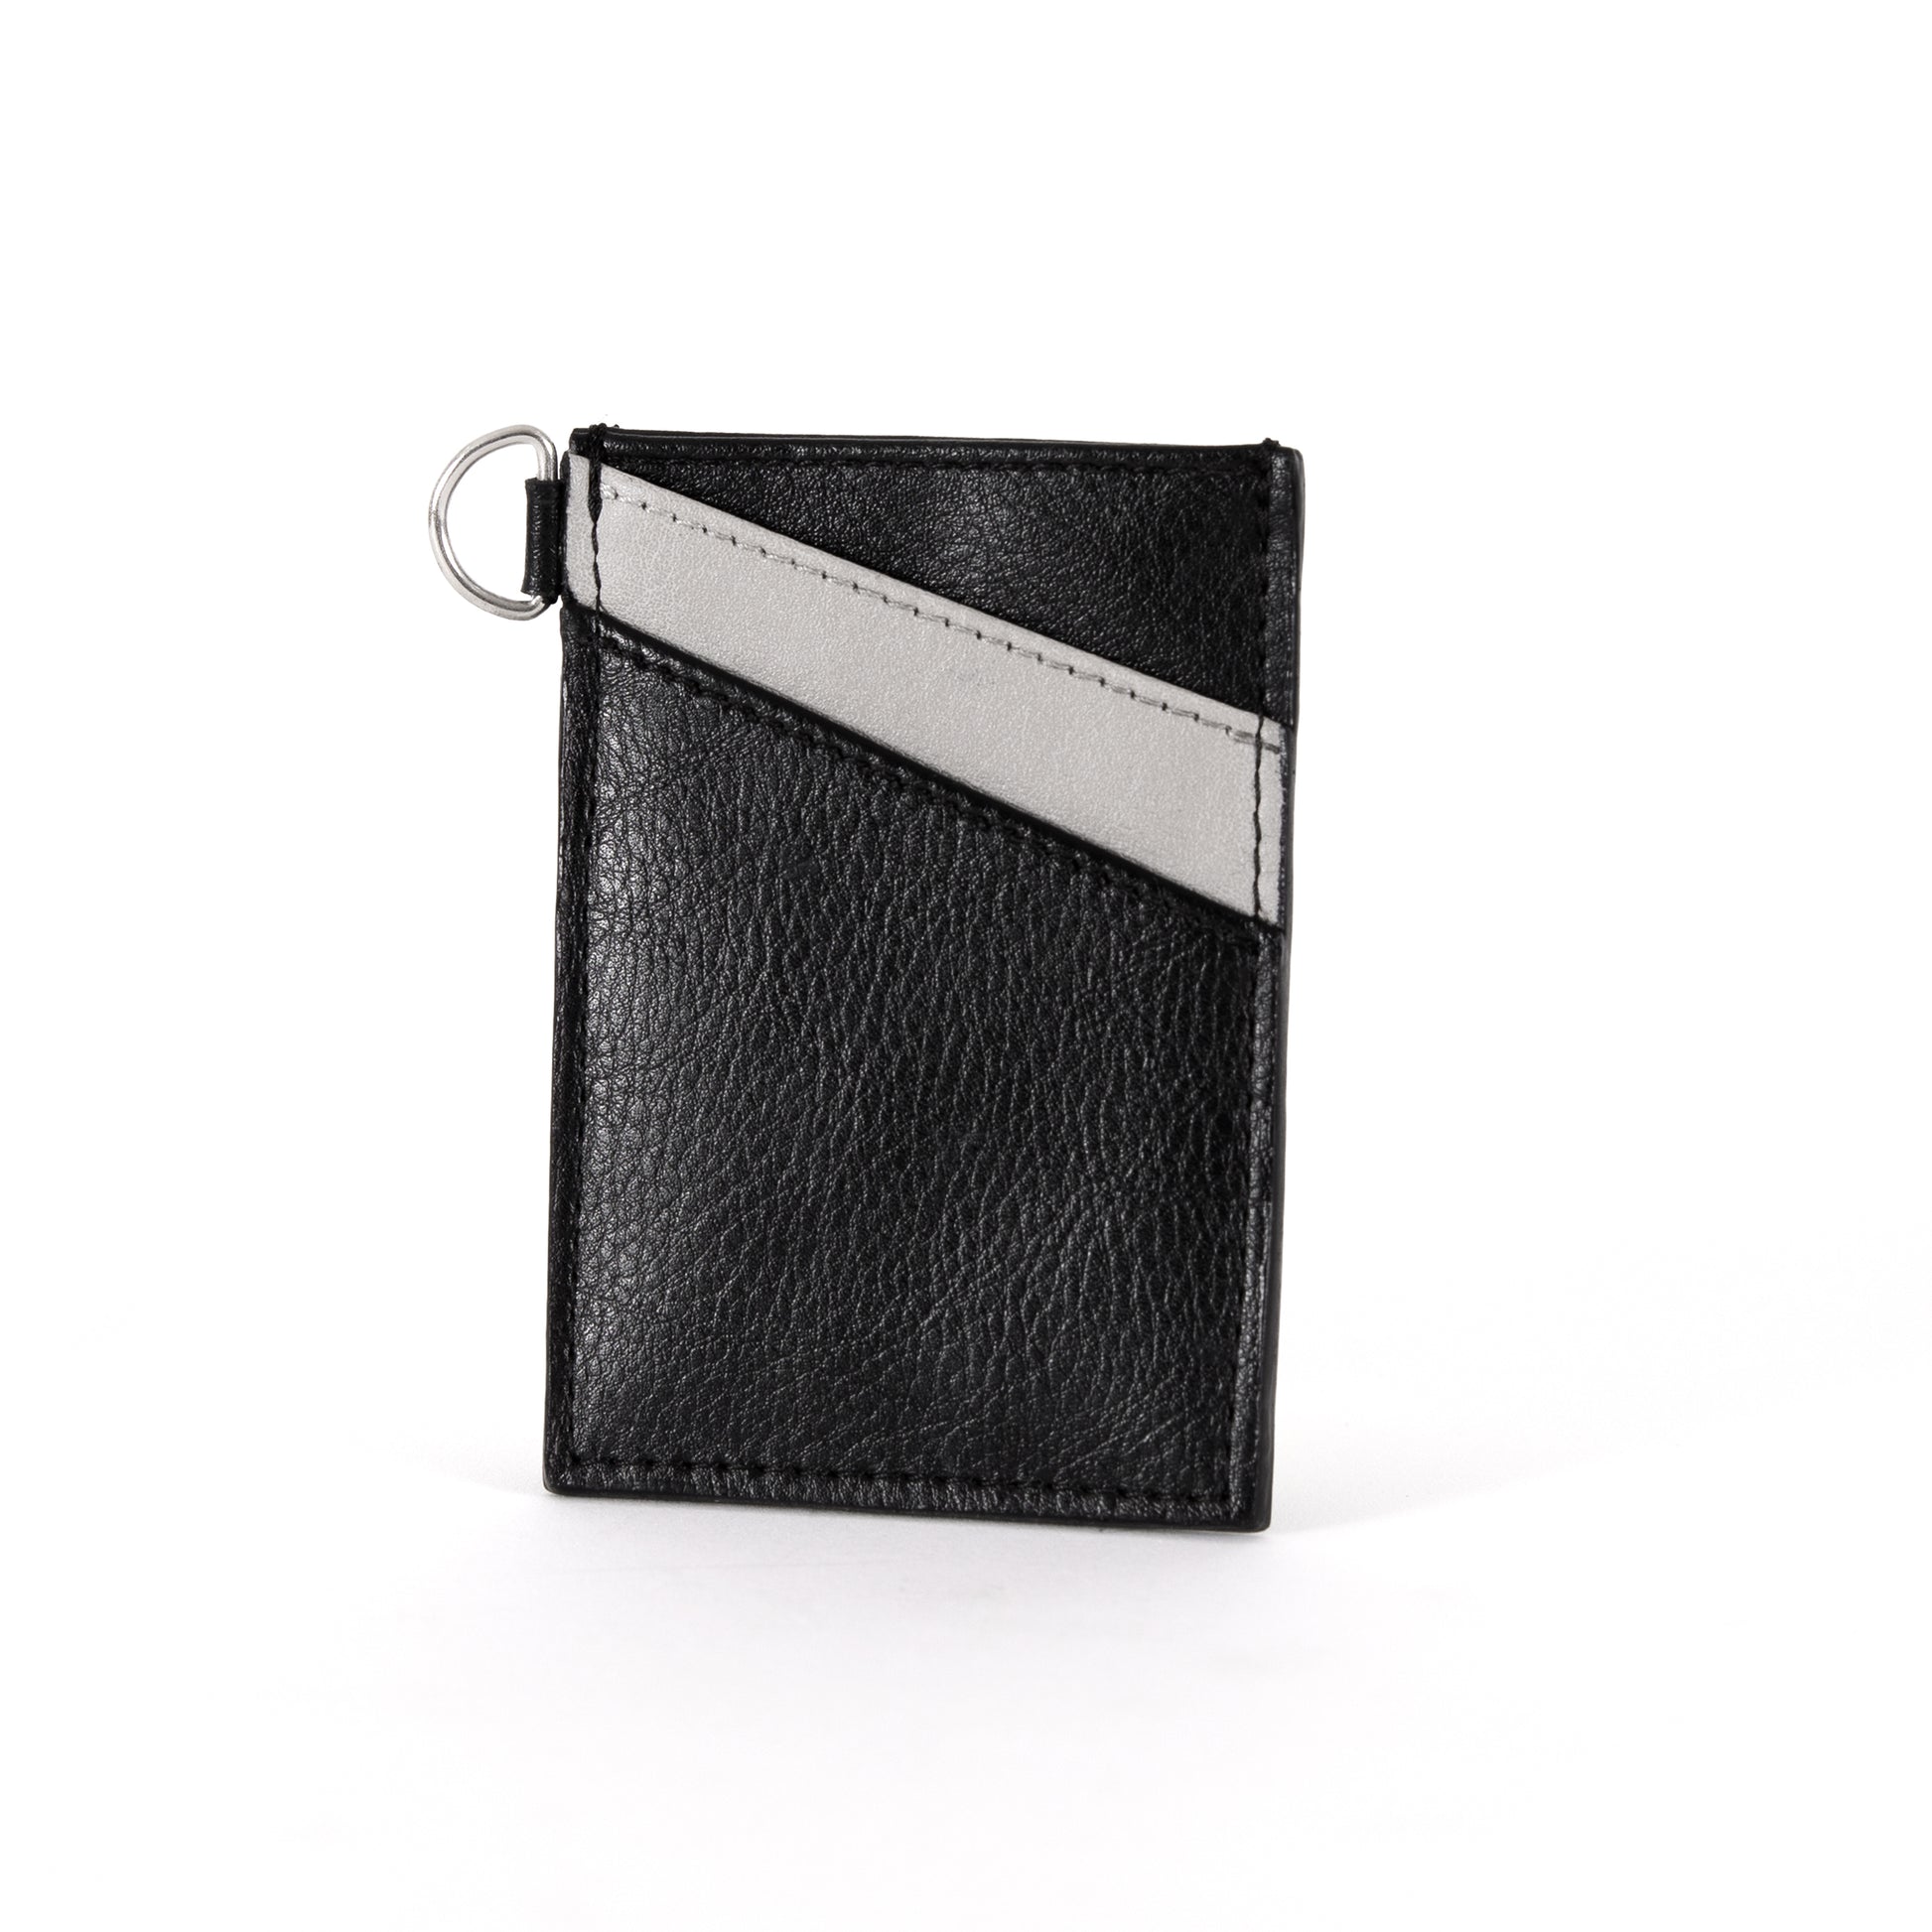 Black & Gray Slim Card Holder wallet  for Women and Men 